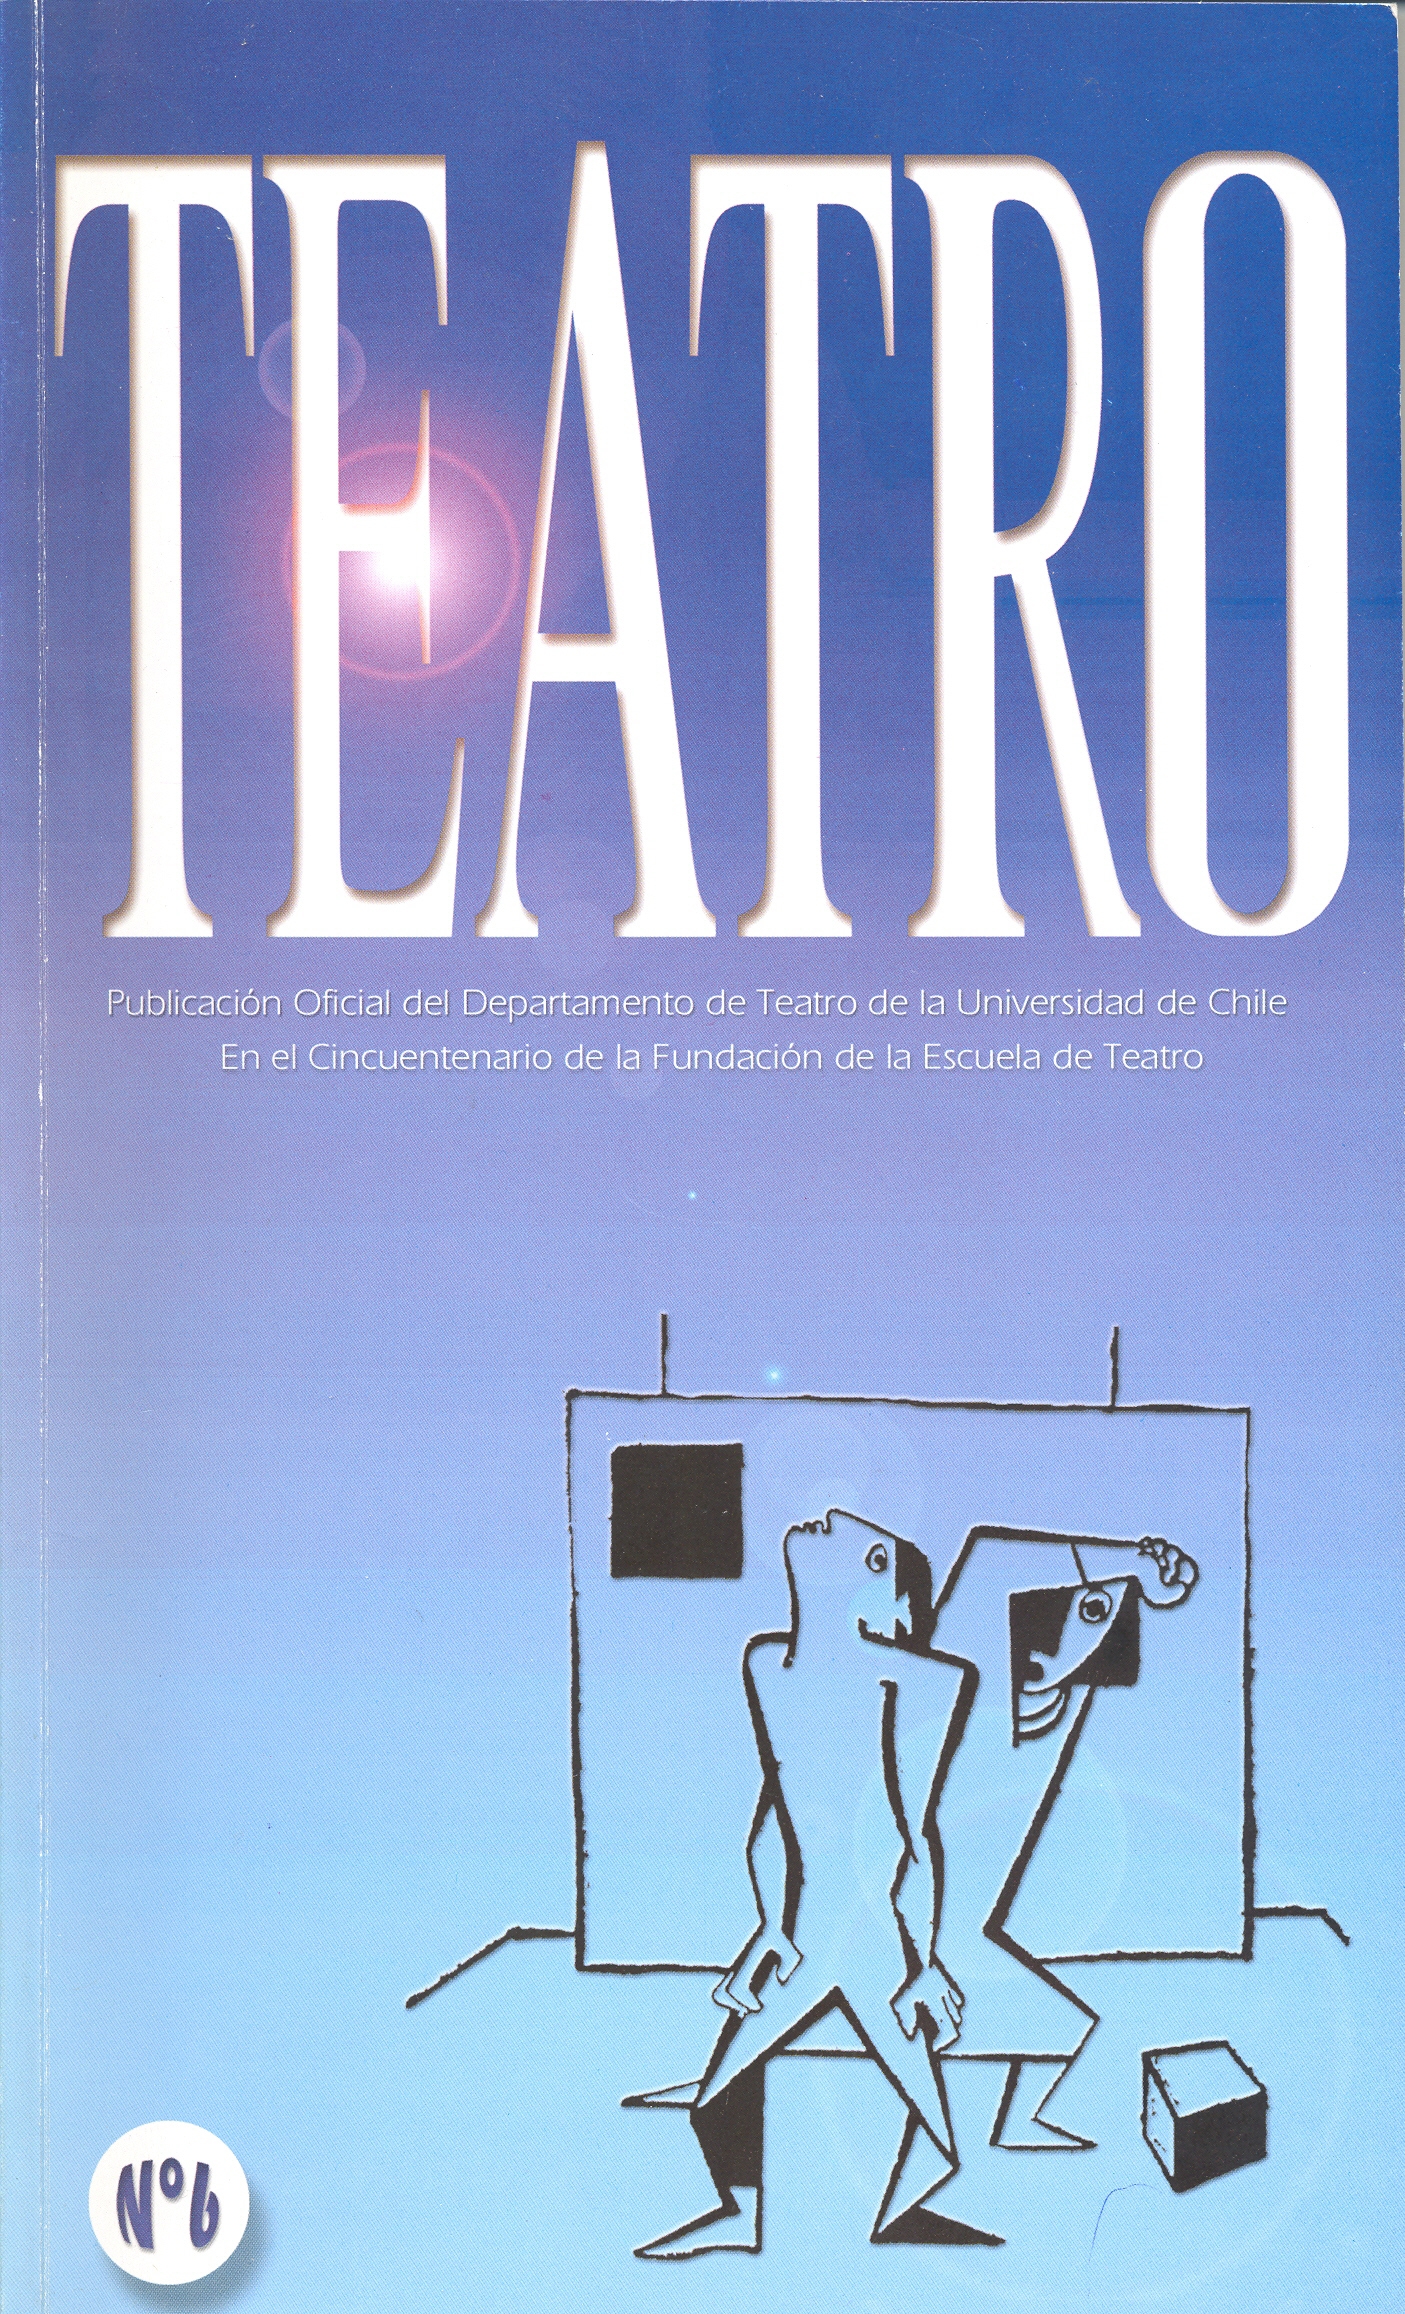 							View No. 6 (1999): Publicación oficial del Teatro Experimental de la Universidad de Chile
						